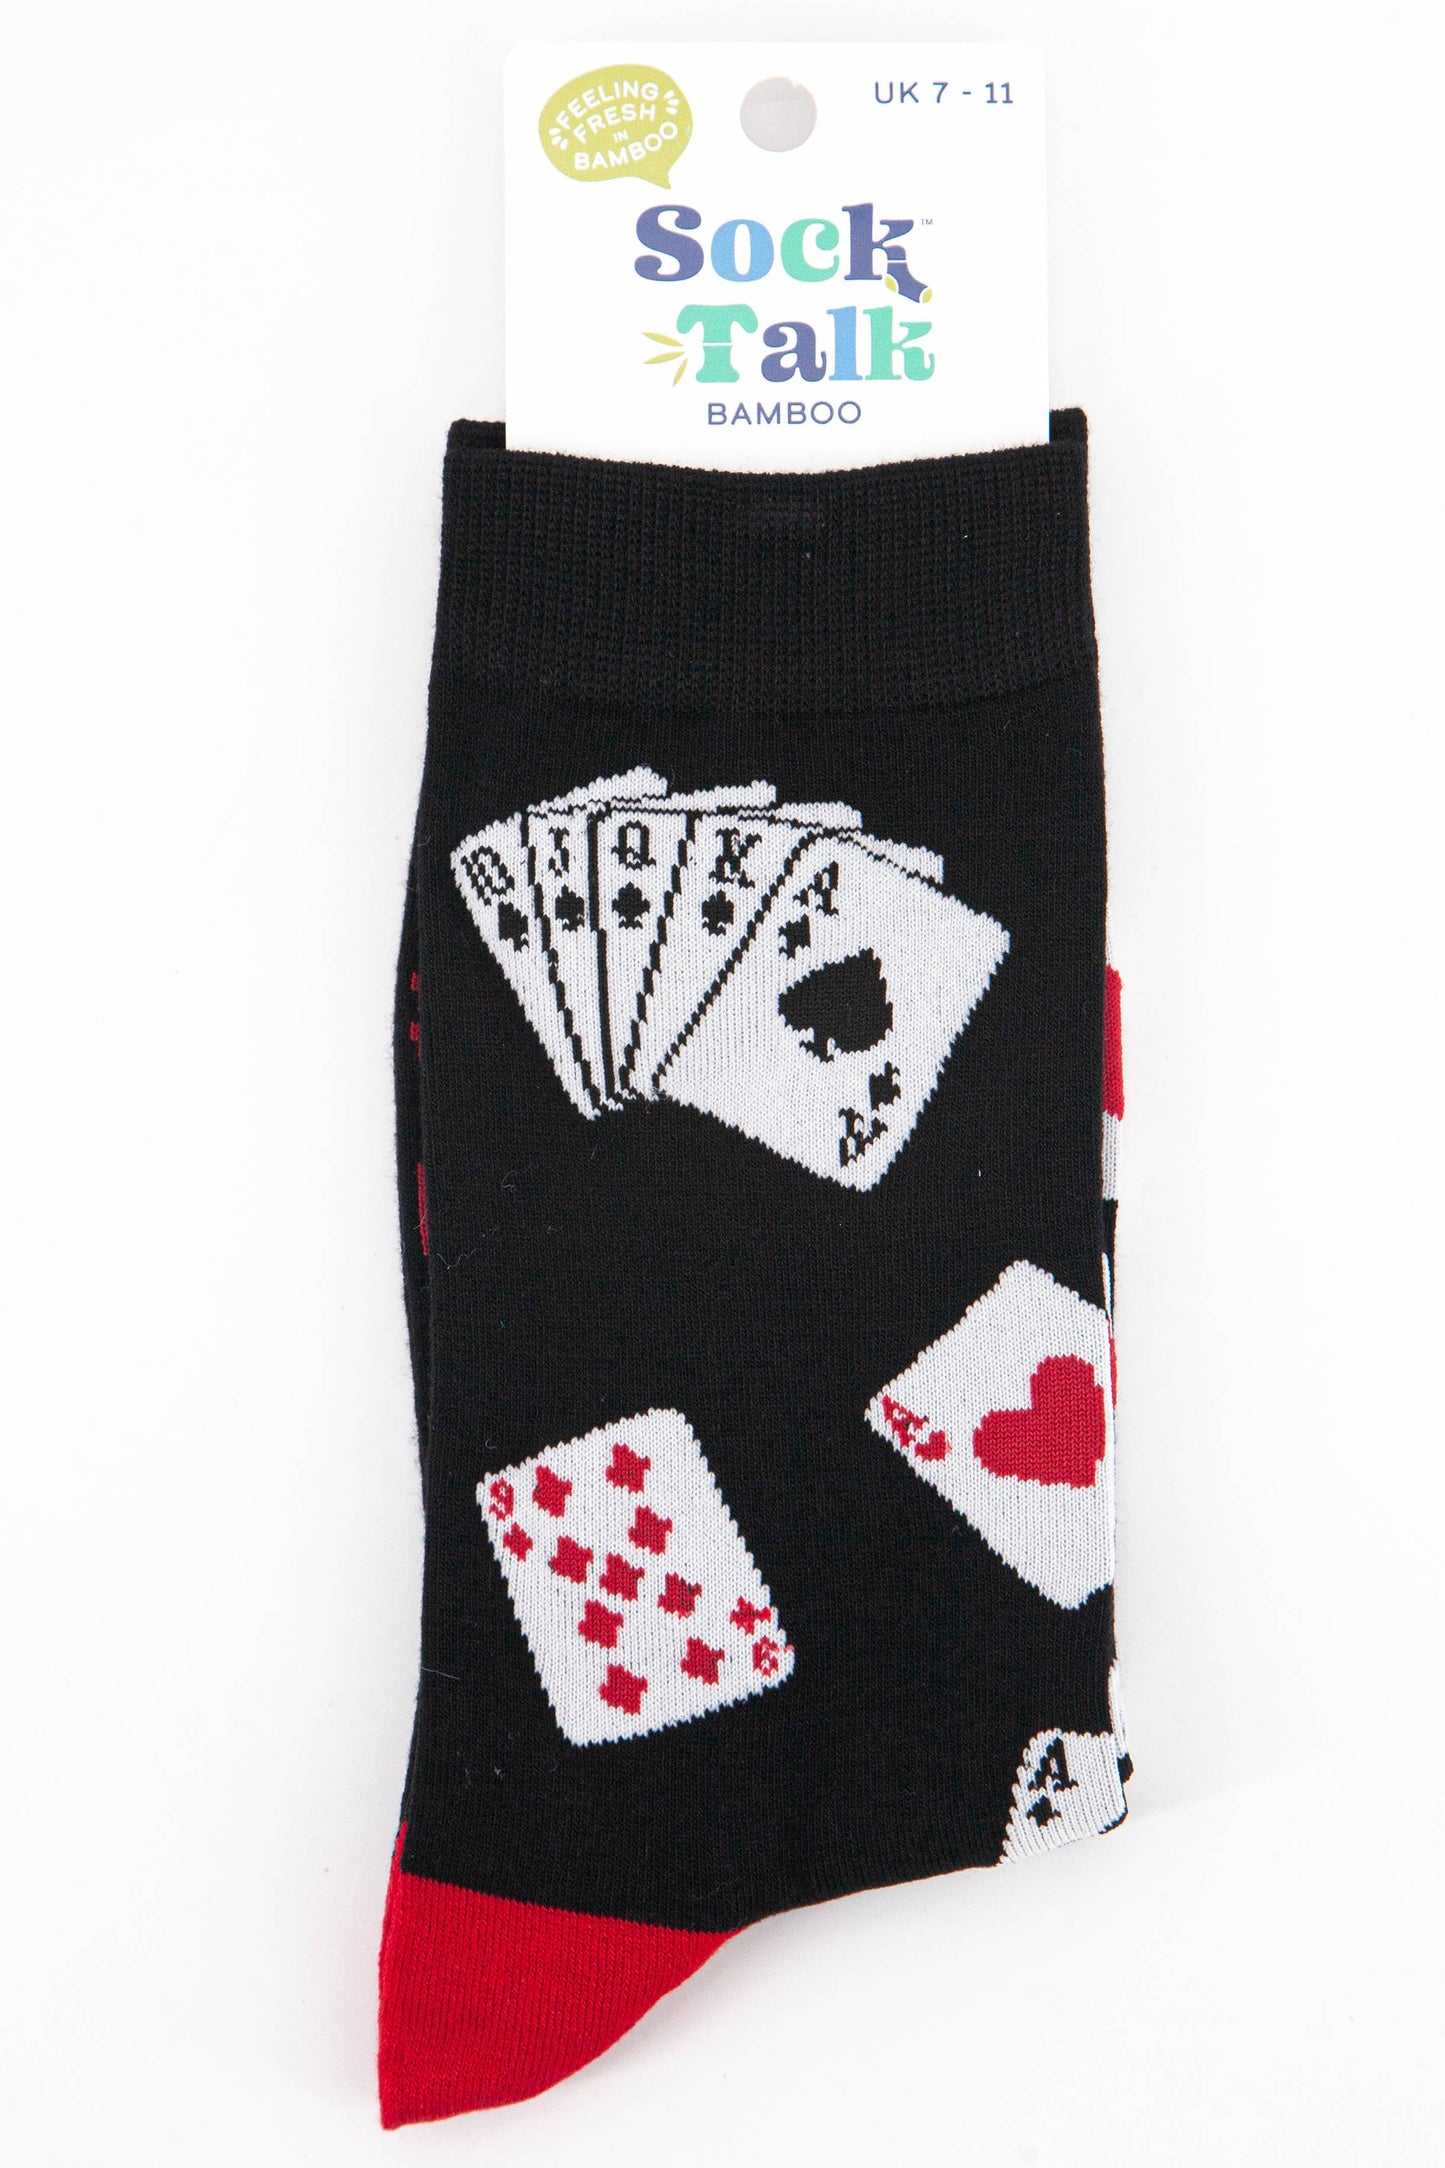 mens poker socks uk size 7-11